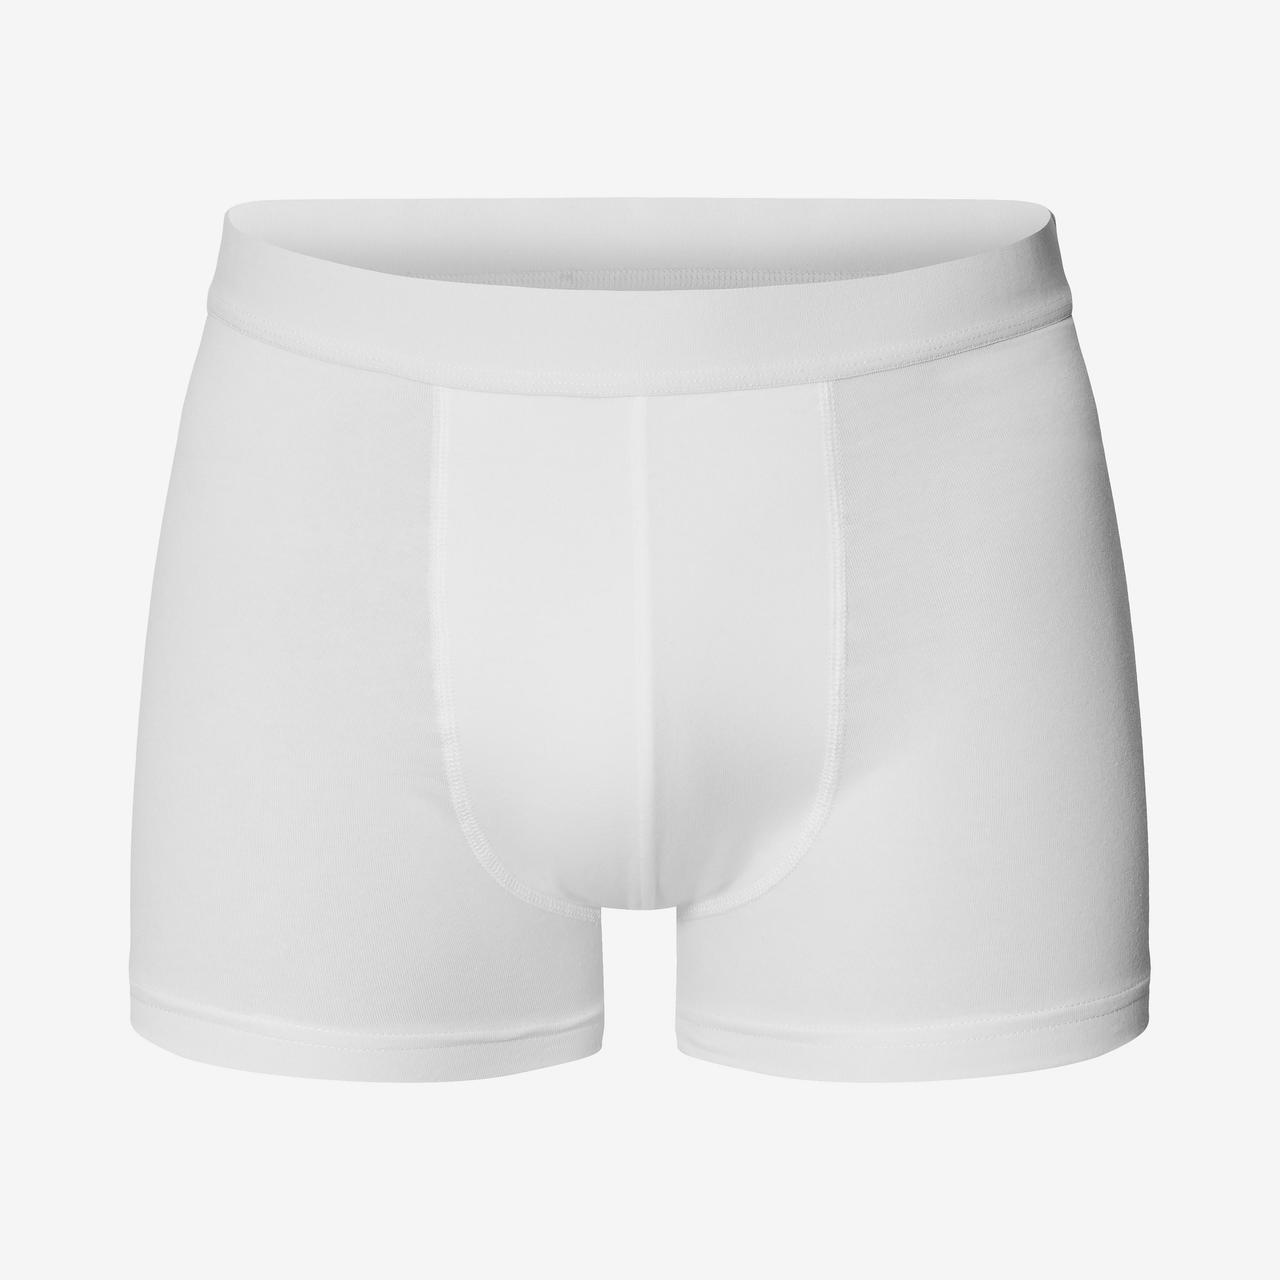 Niche Brands Changing Men's Underwear Business